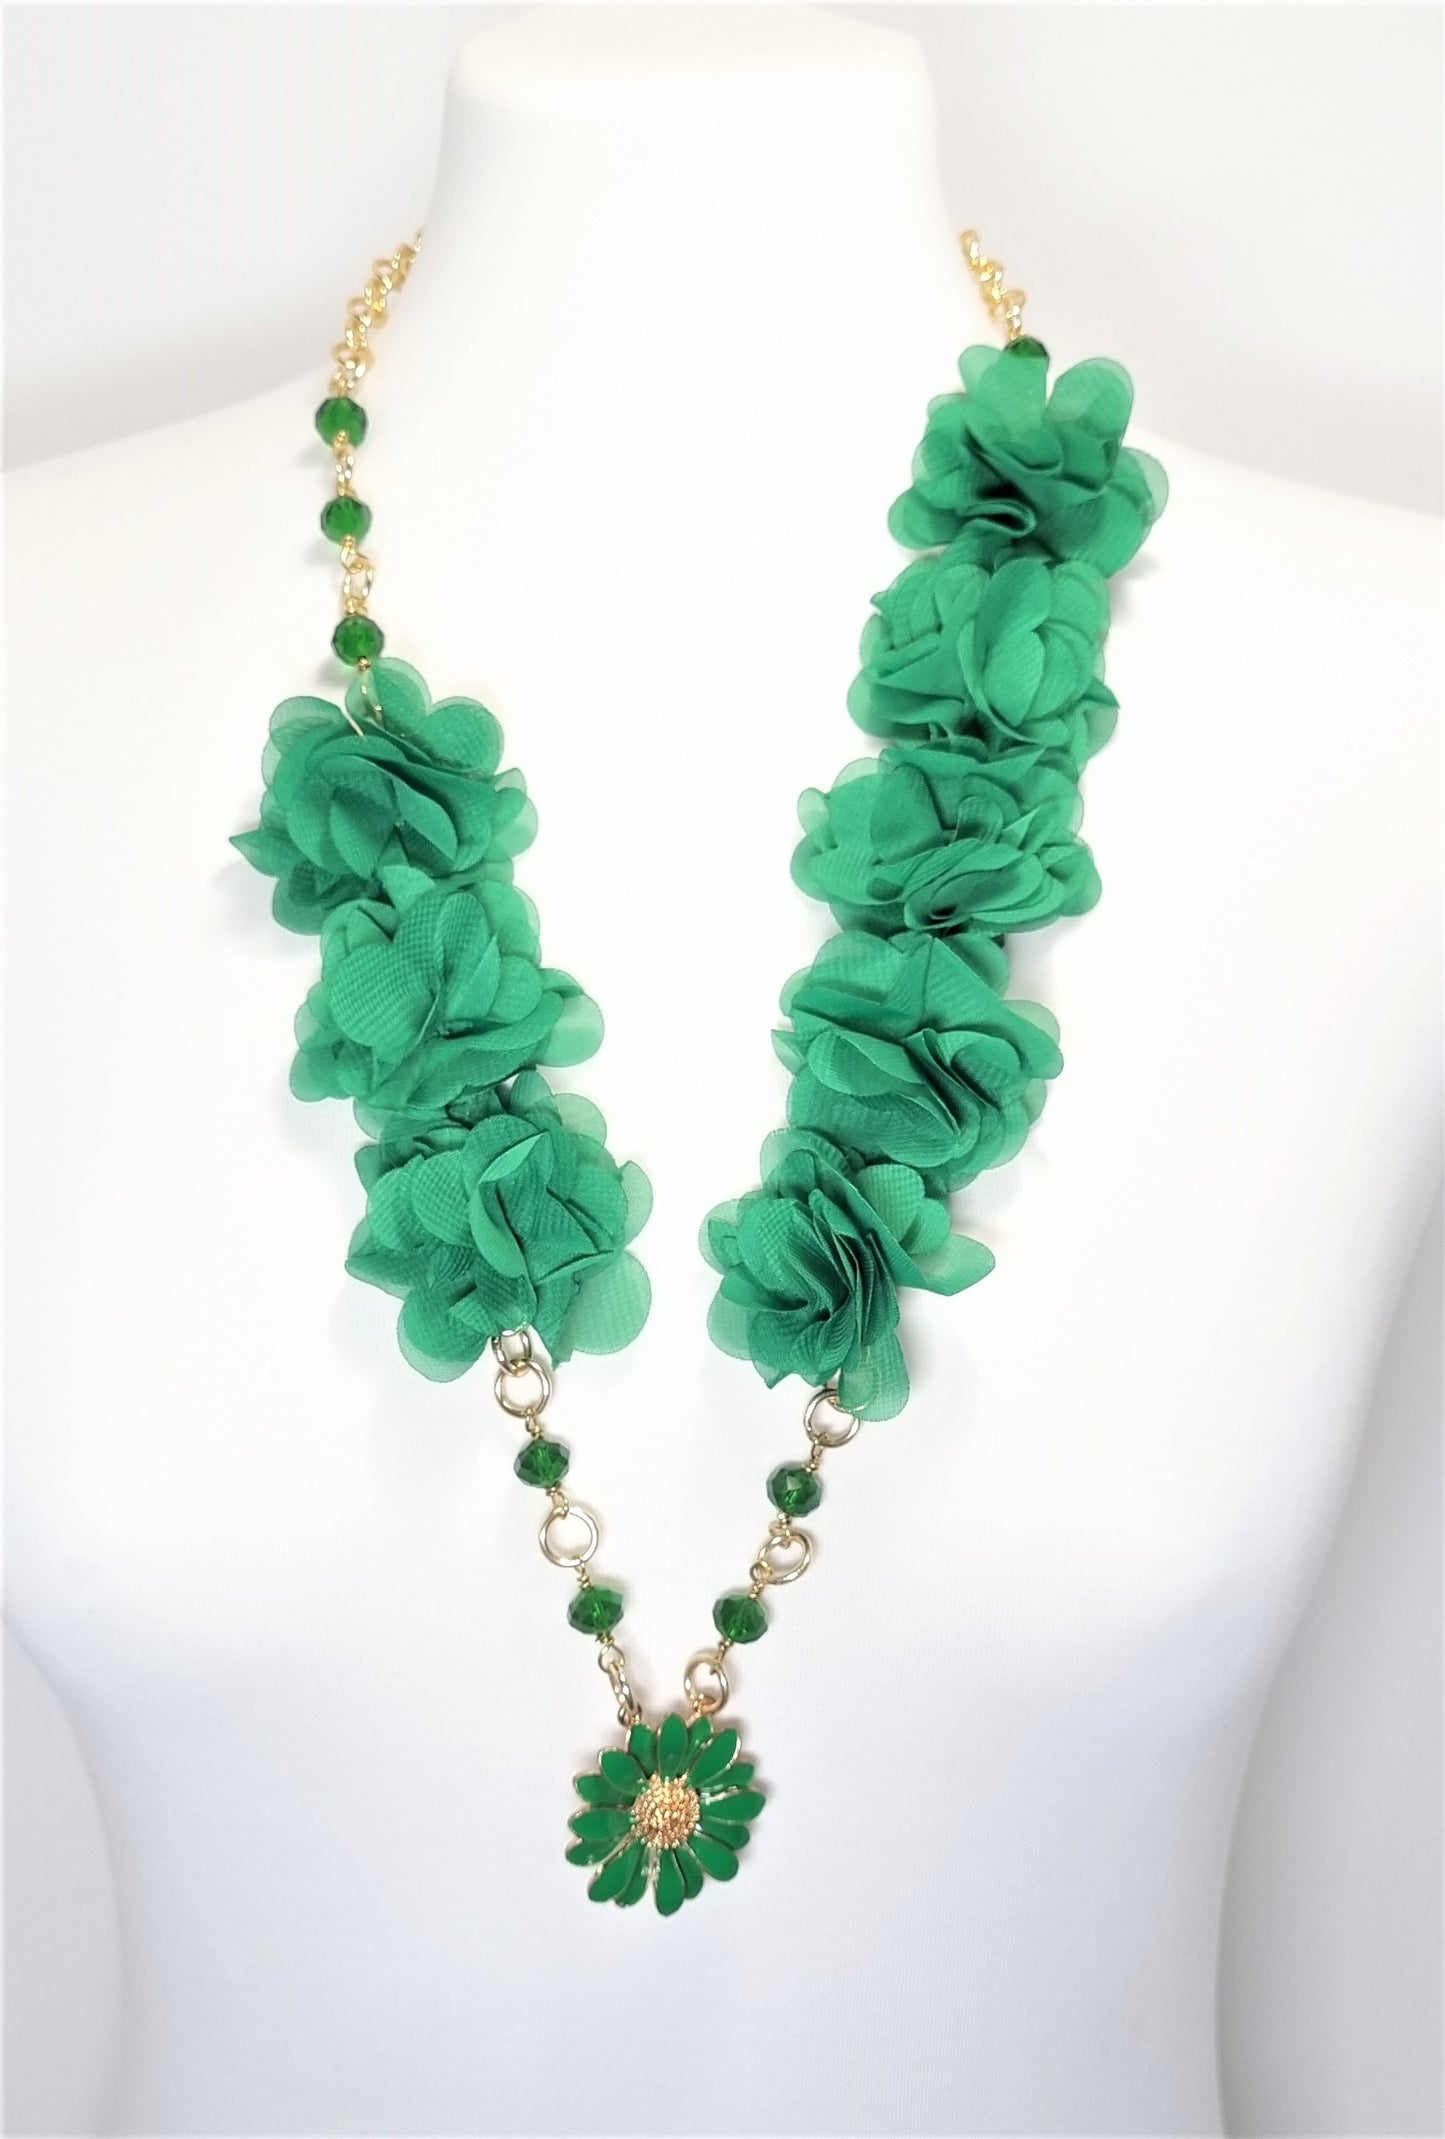 Collana LE ROSE .021 verde smeraldo, fiori tessuto e smalto con cristalli e metallo dorato.